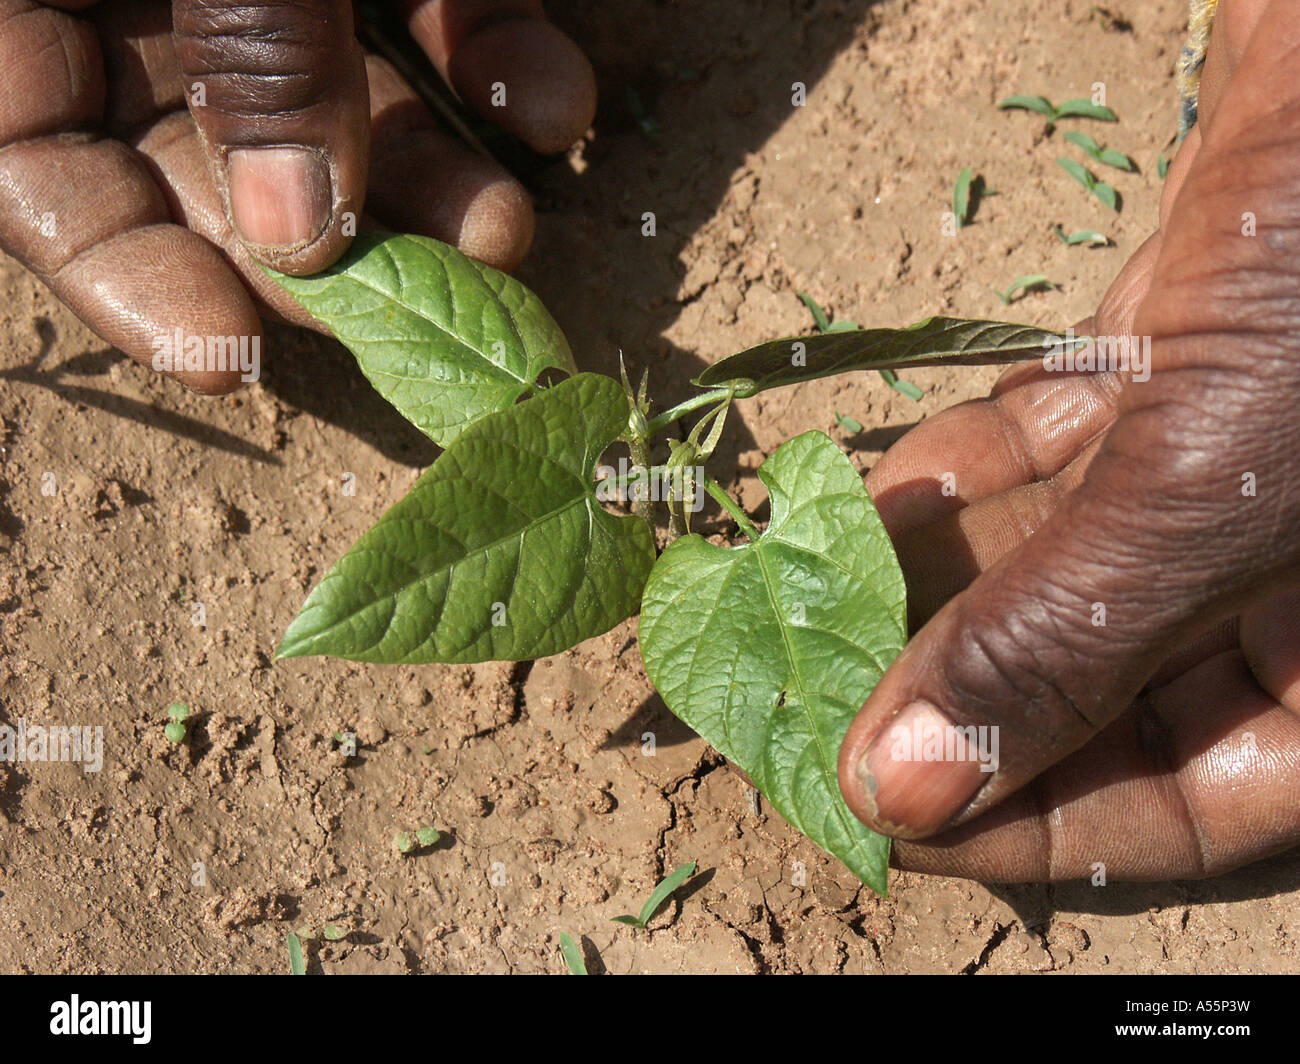 La Zambie est Painet1643 vert semis haricots veloutés au pays en développement, de pays moins développés économiquement émergentes de la culture Banque D'Images